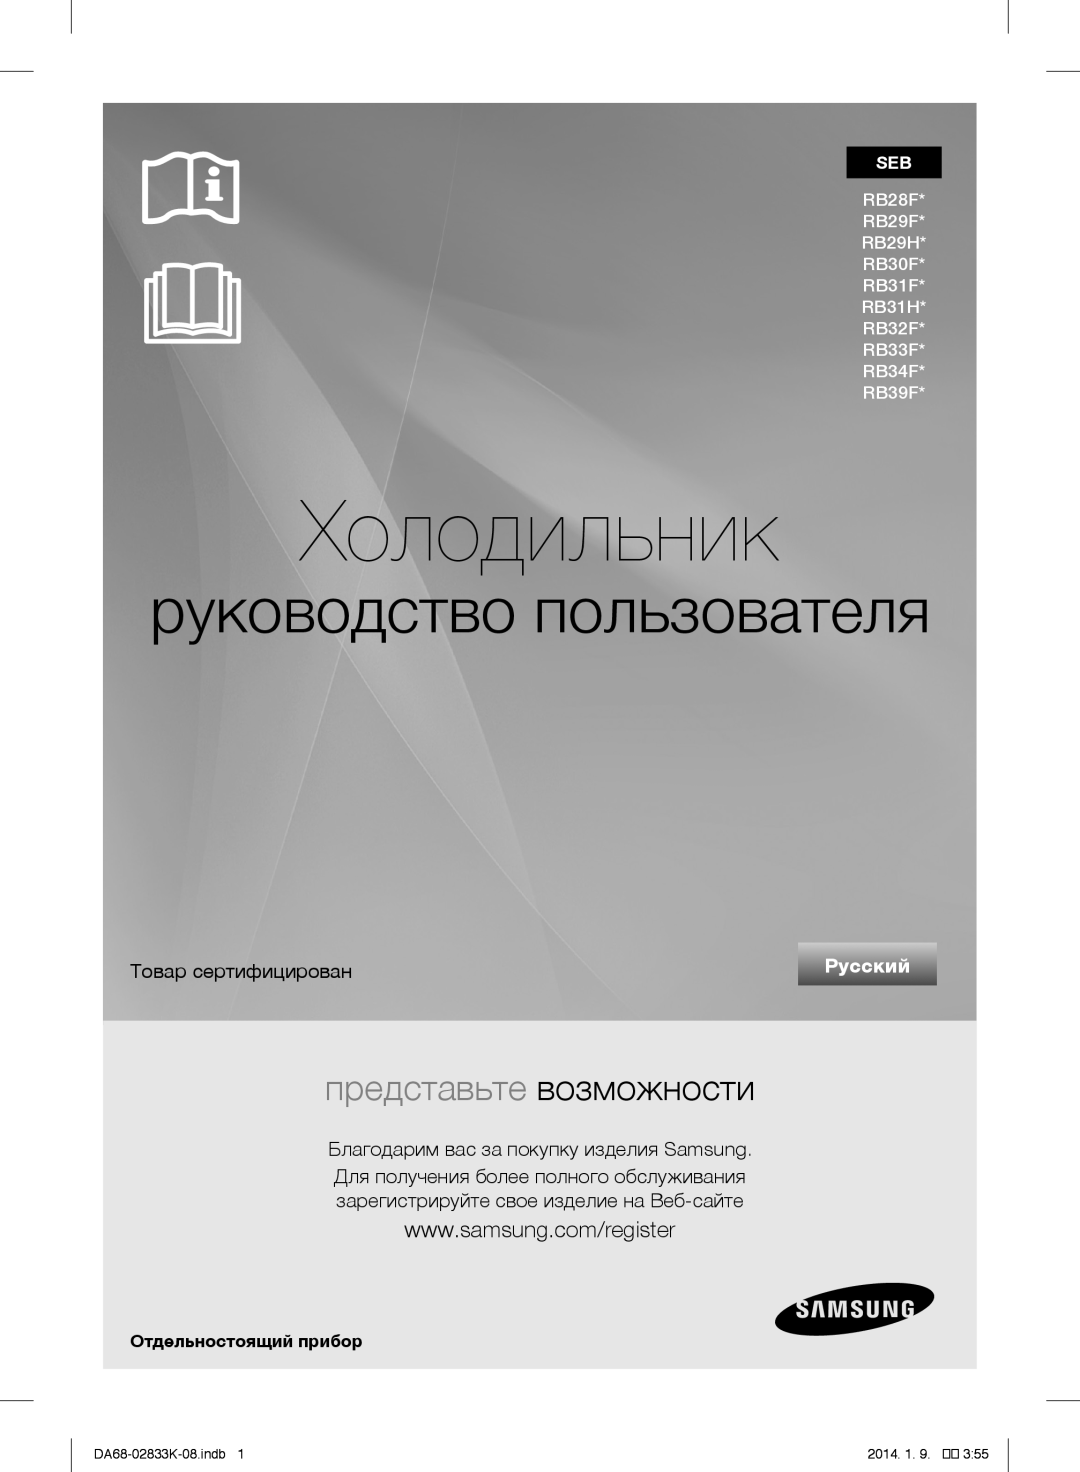 Samsung RB33J3030SA/EF manual Холодильник, руководство пользователя, представьте возможности, Товар сертифицирован, Русский 